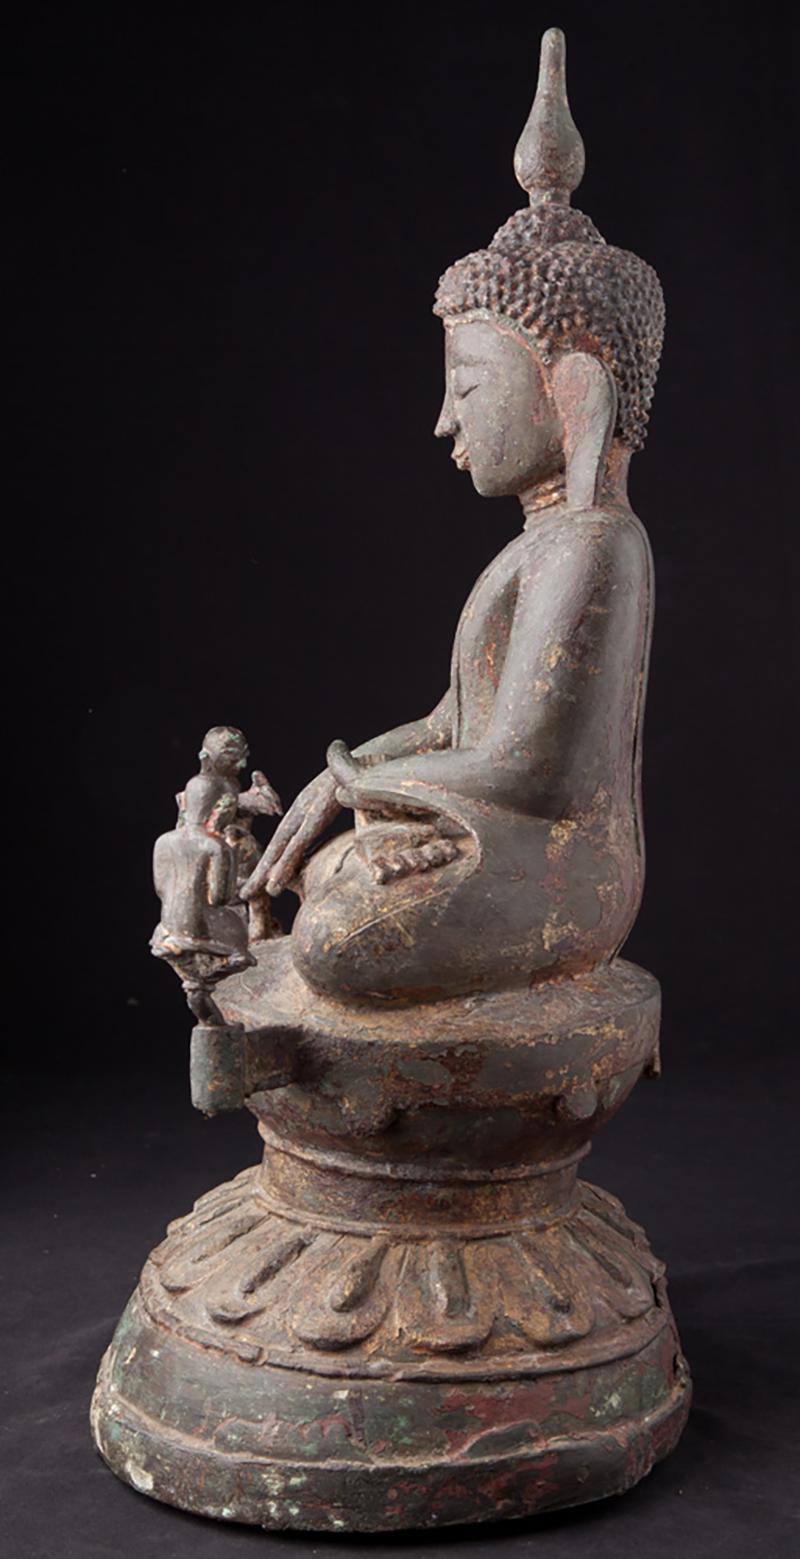 Burmese 15-16th century special bronze Ava Buddha statue from Burma - Original Buddhas For Sale